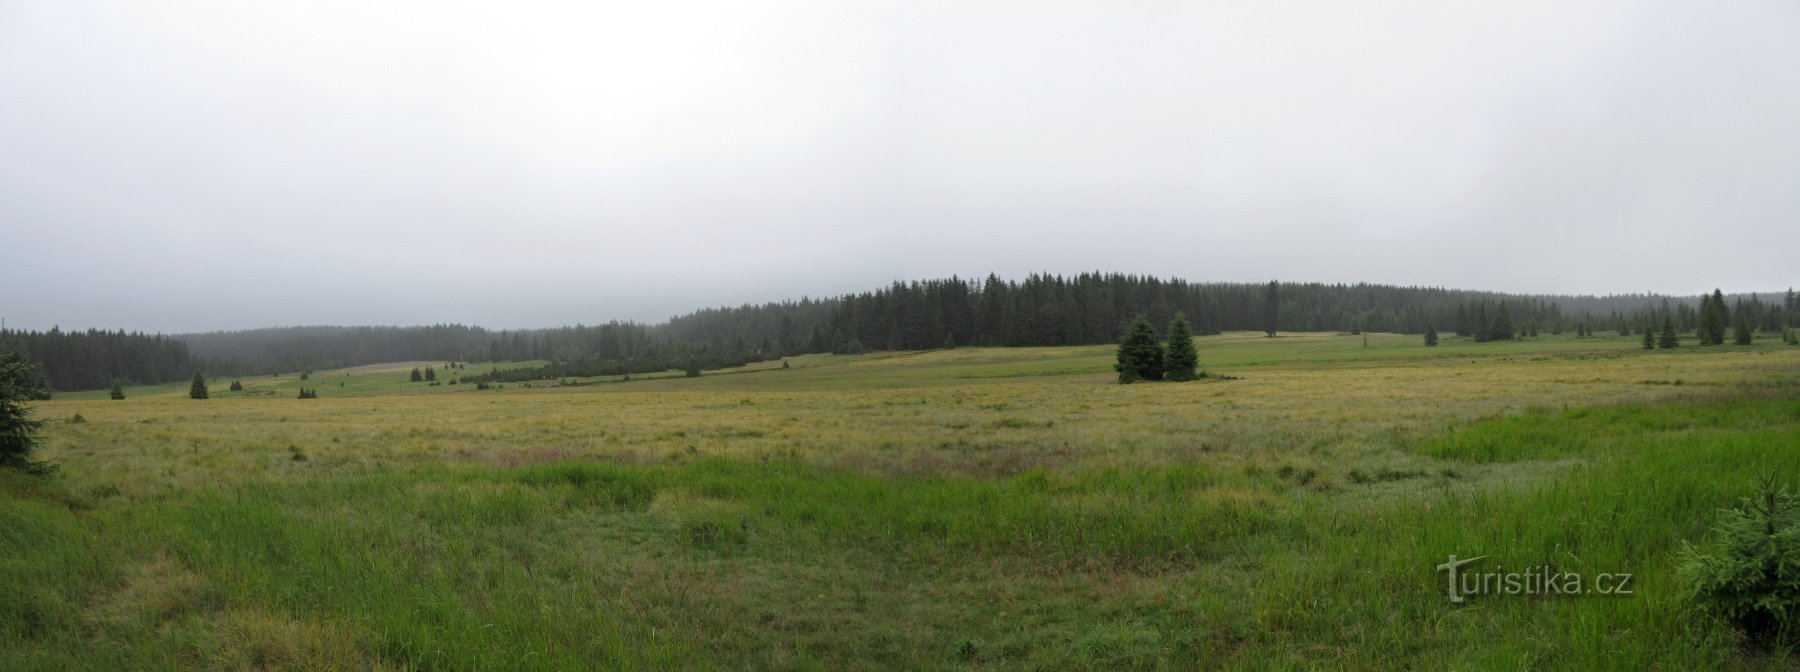 Nationales Naturschutzgebiet Rolavská vrchoviště